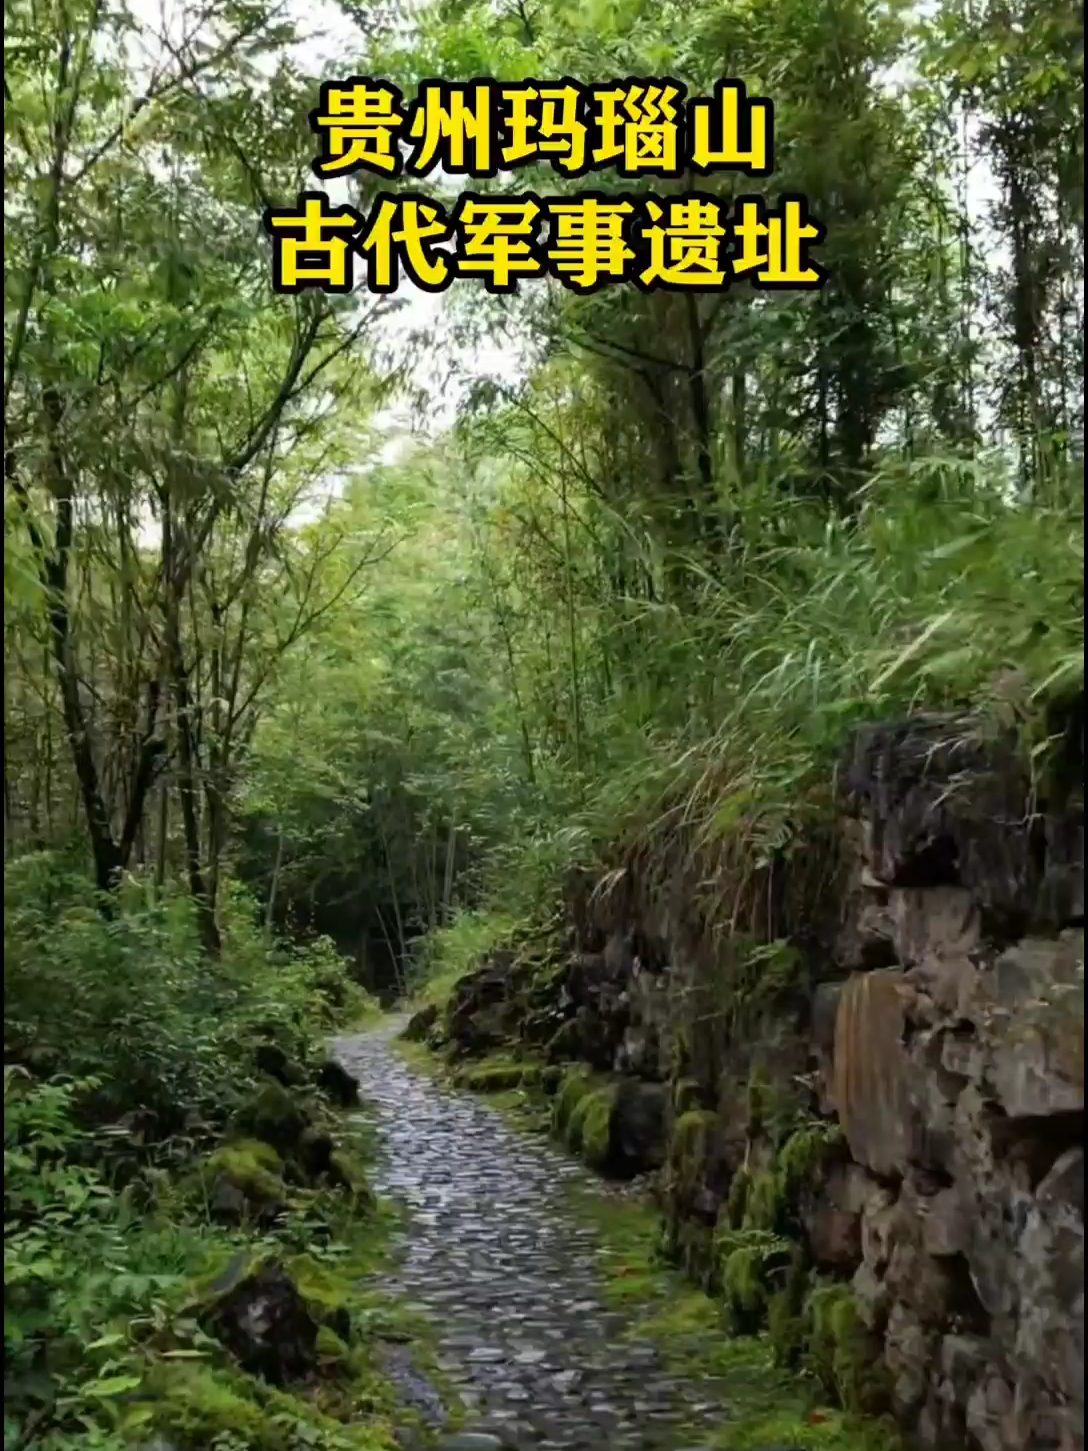 在贵州大山深处，竟然隐藏着一处古代军事遗址，距今已有800多